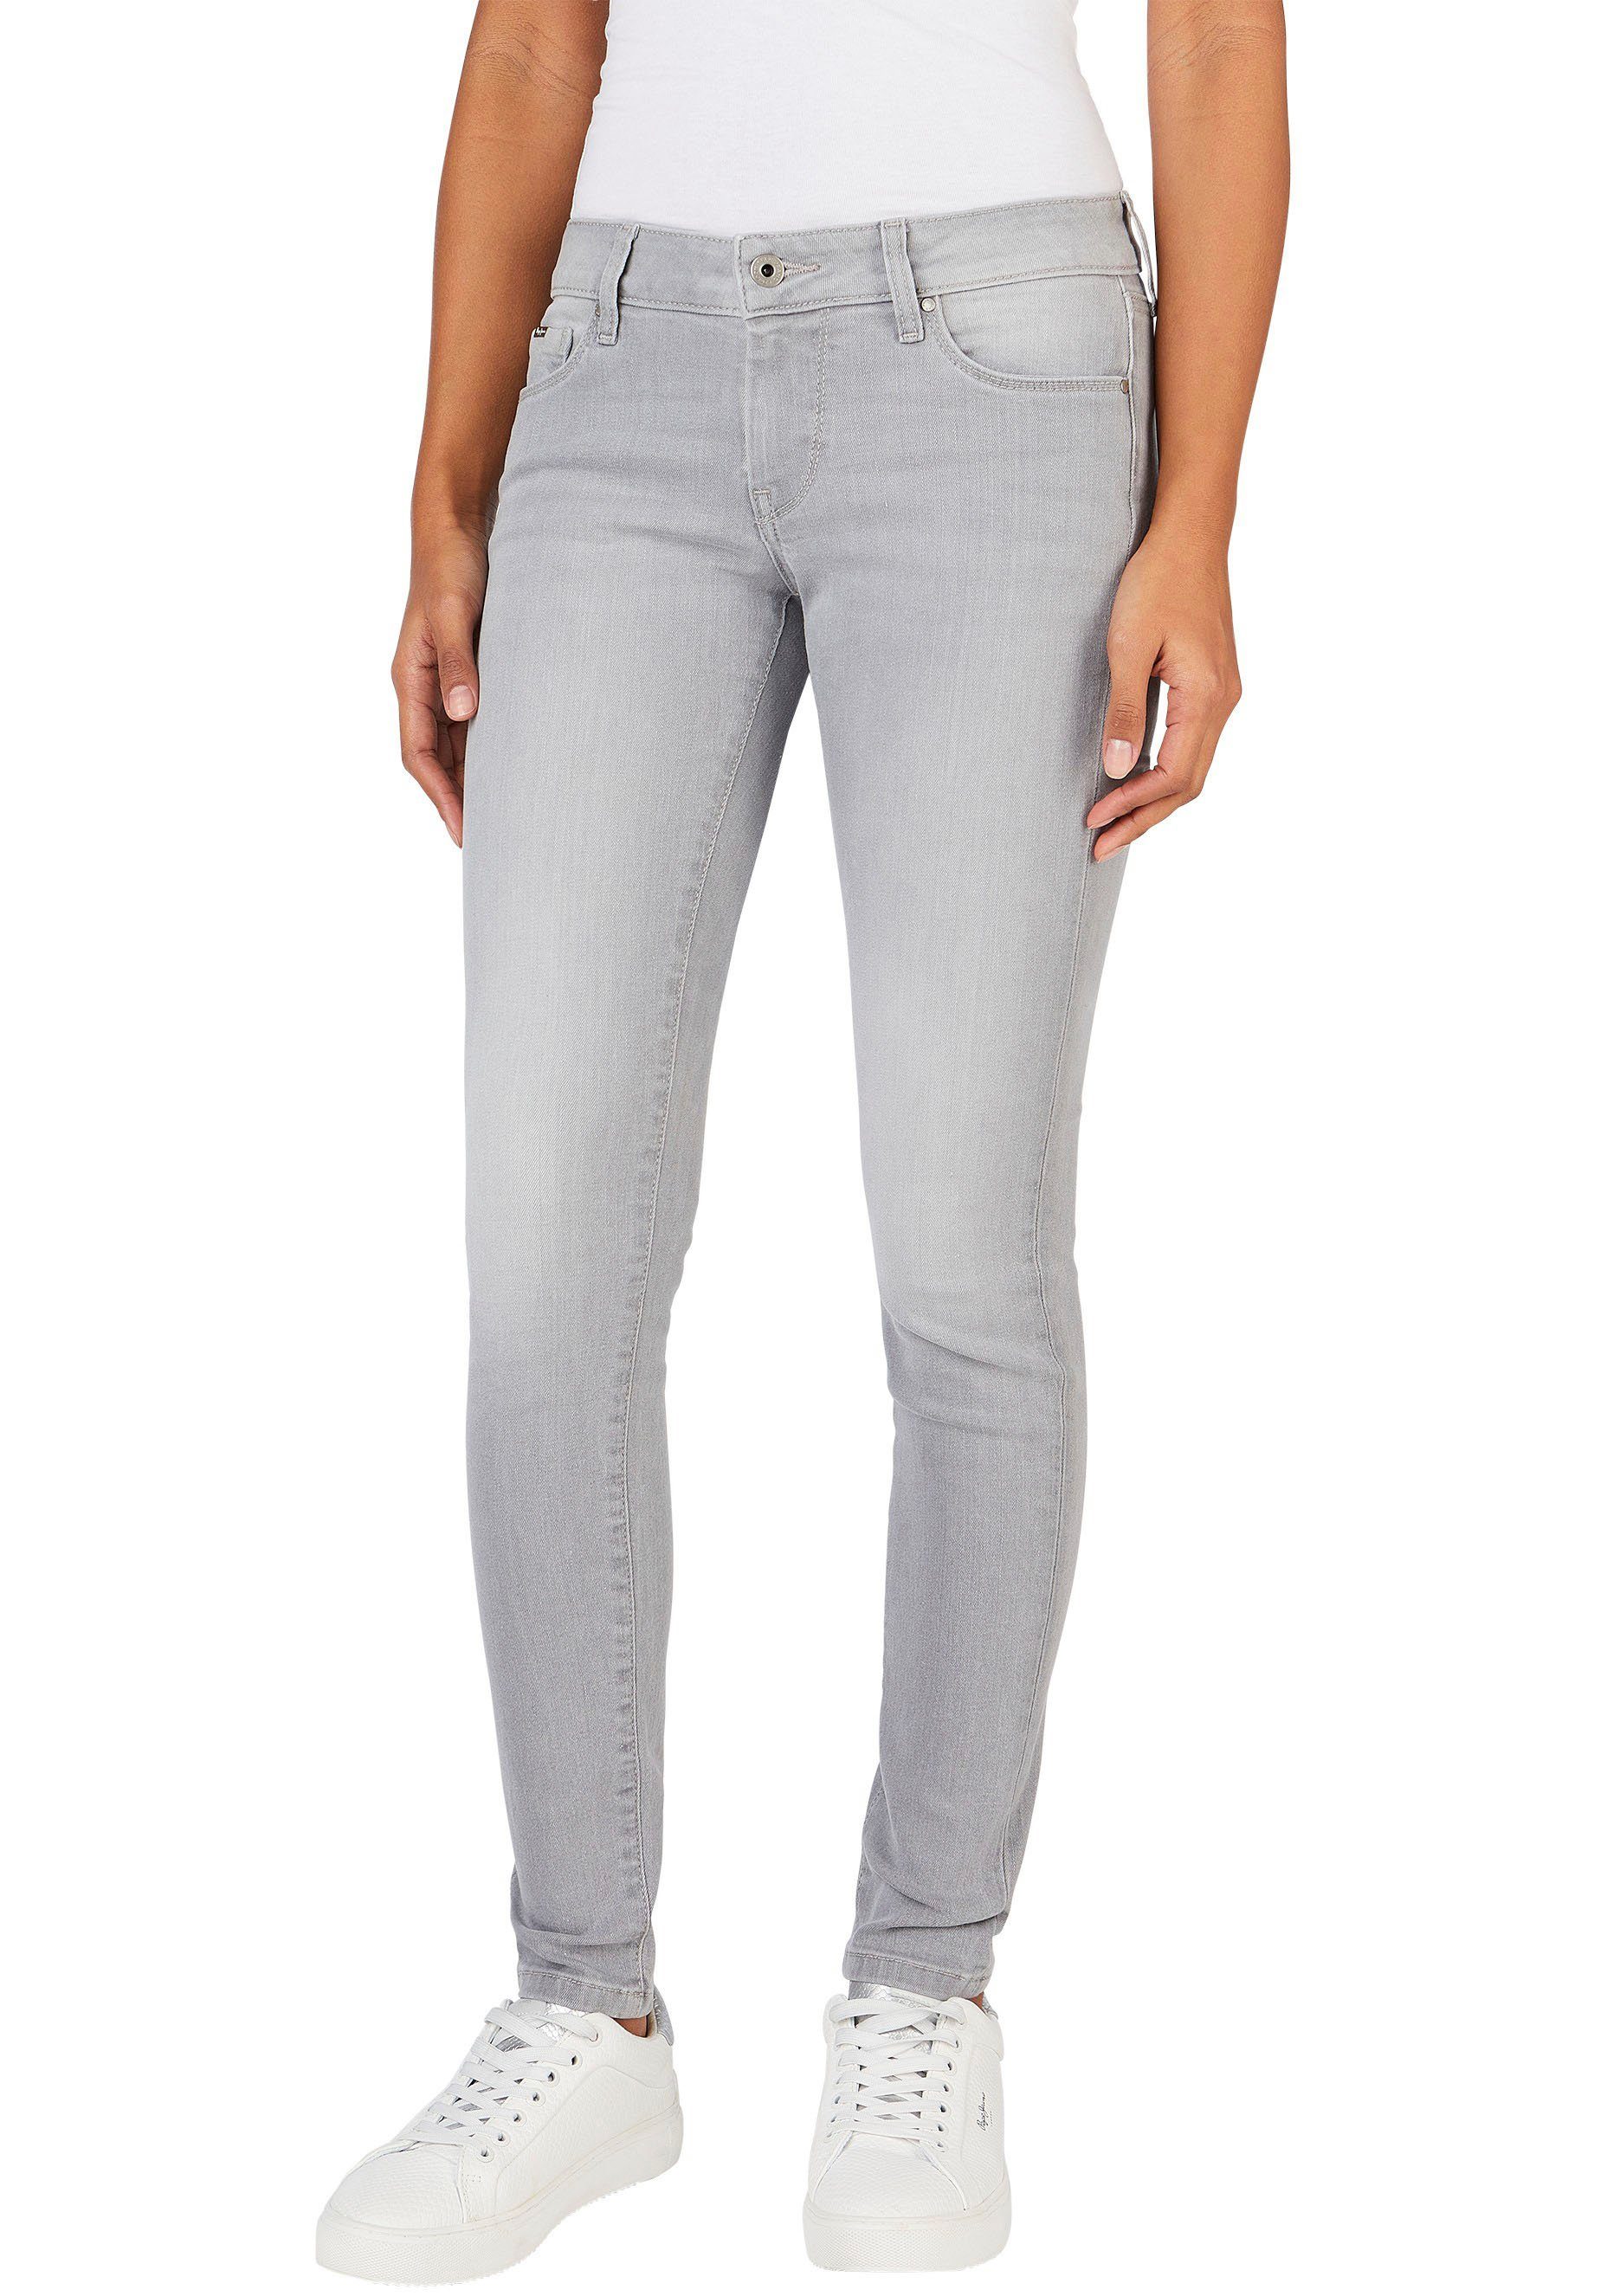 Beförderungschance Pepe Jeans Skinny-fit-Jeans SOHO Stretch-Anteil mit light grey 1-Knopf Bund und im 5-Pocket-Stil